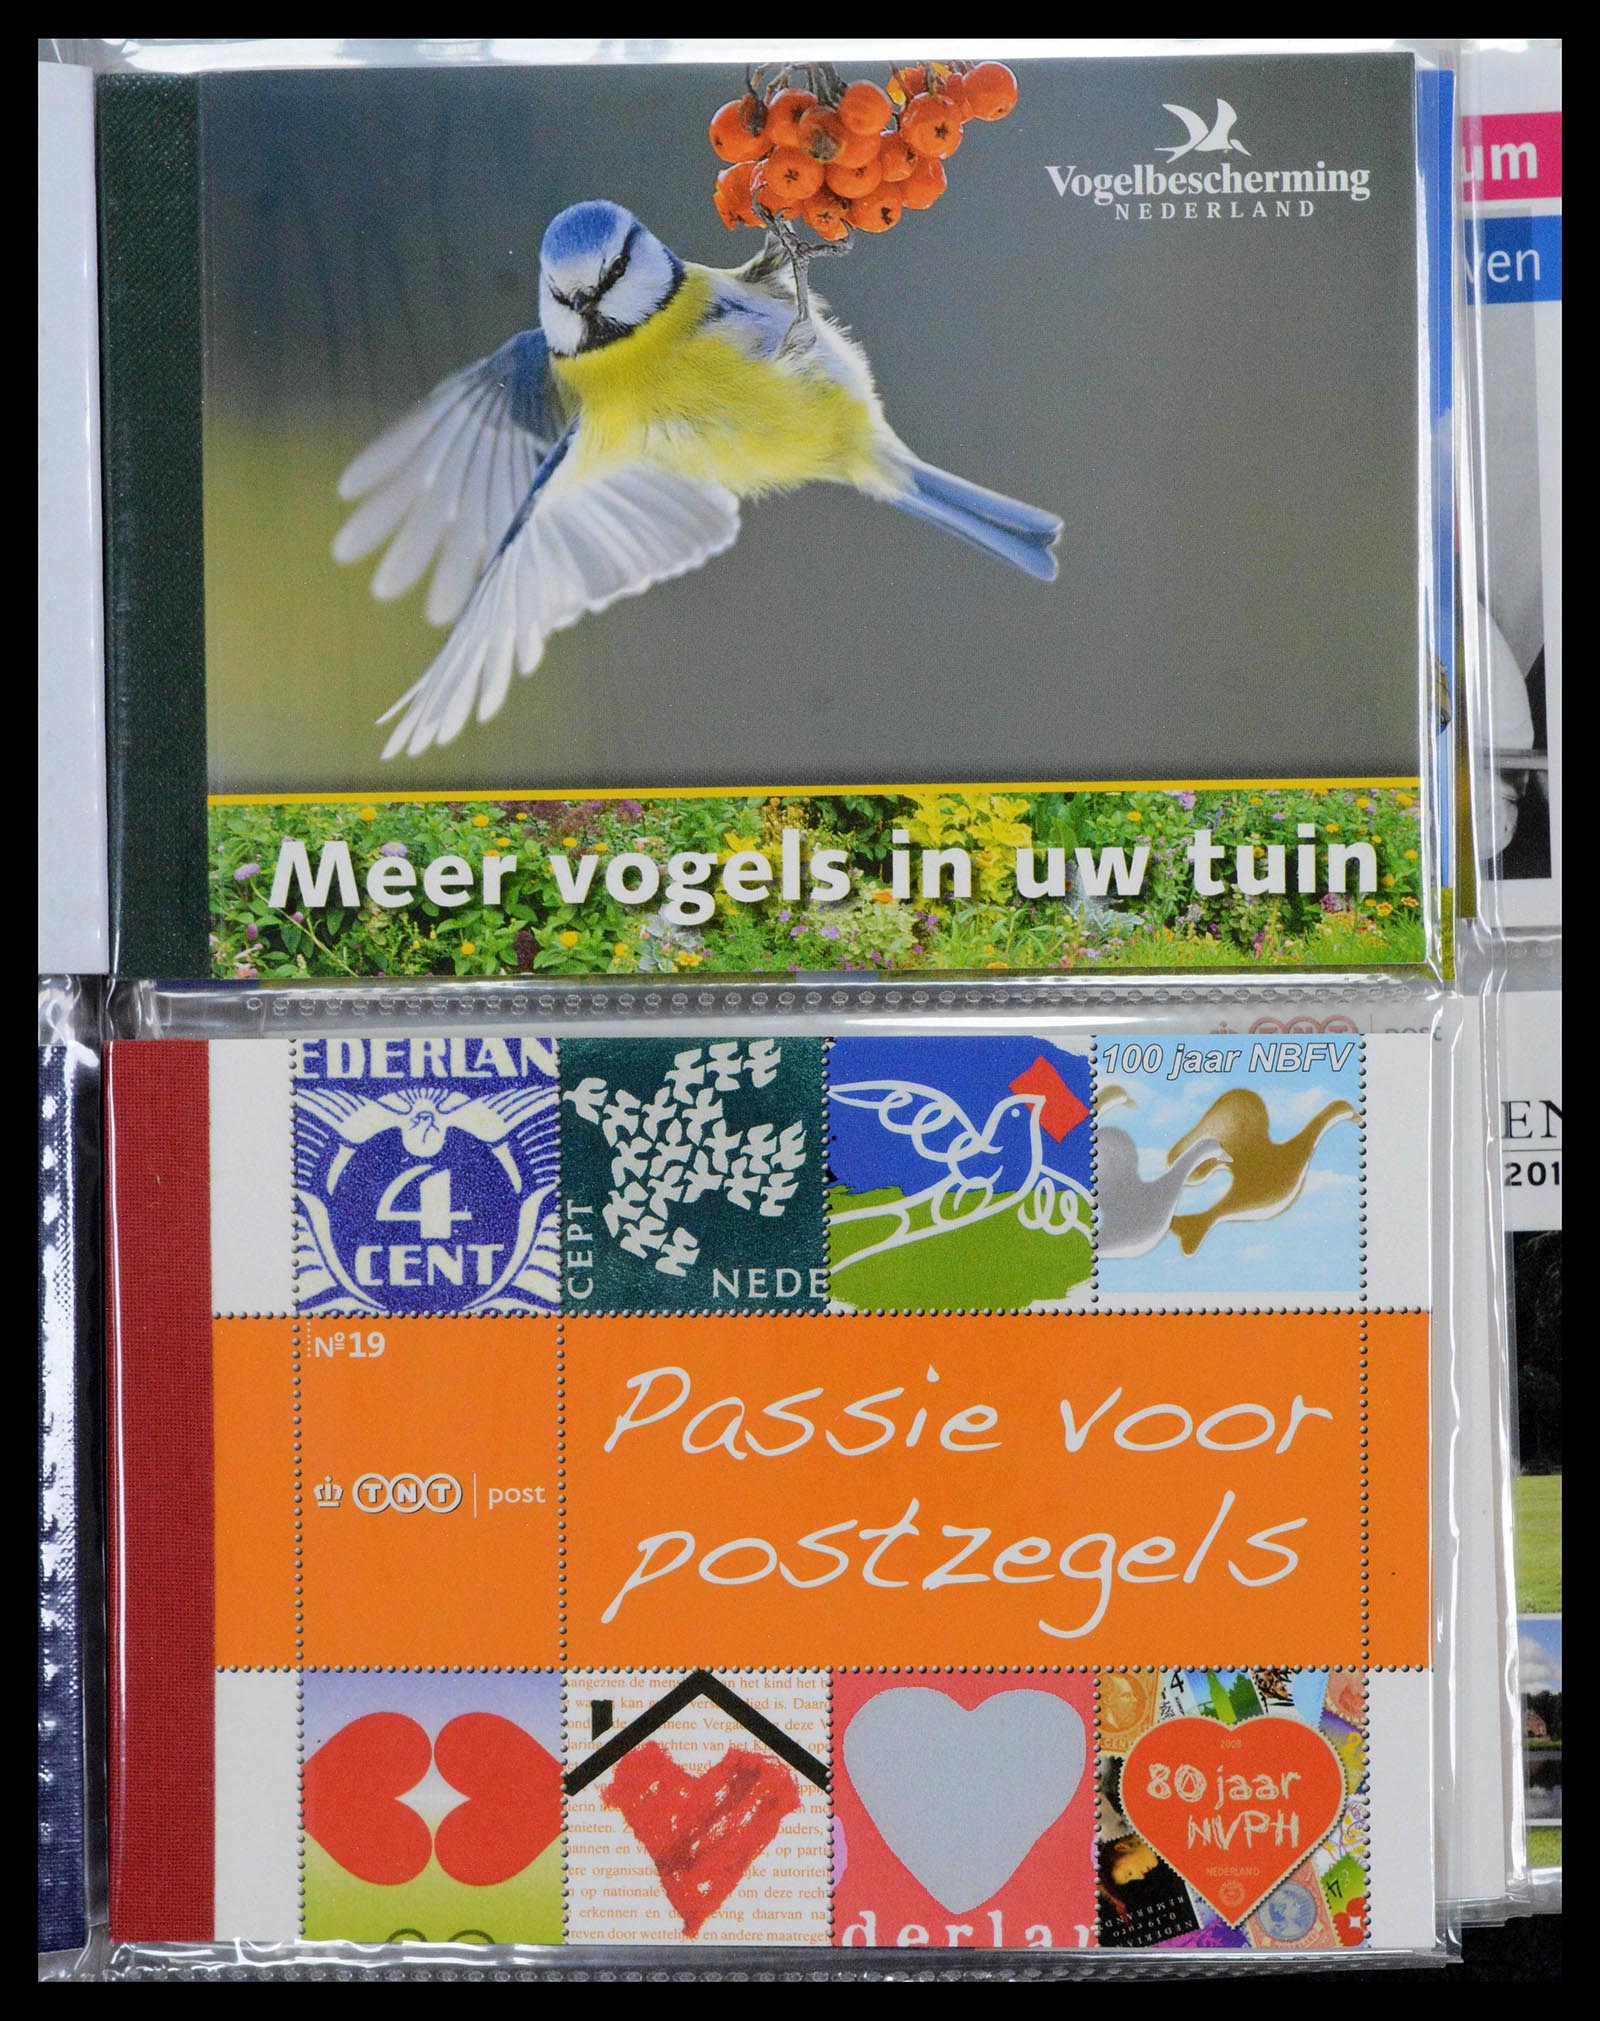 39018 0010 - Stamp collection 39018 Netherlands prestige booklets 2003-2016.